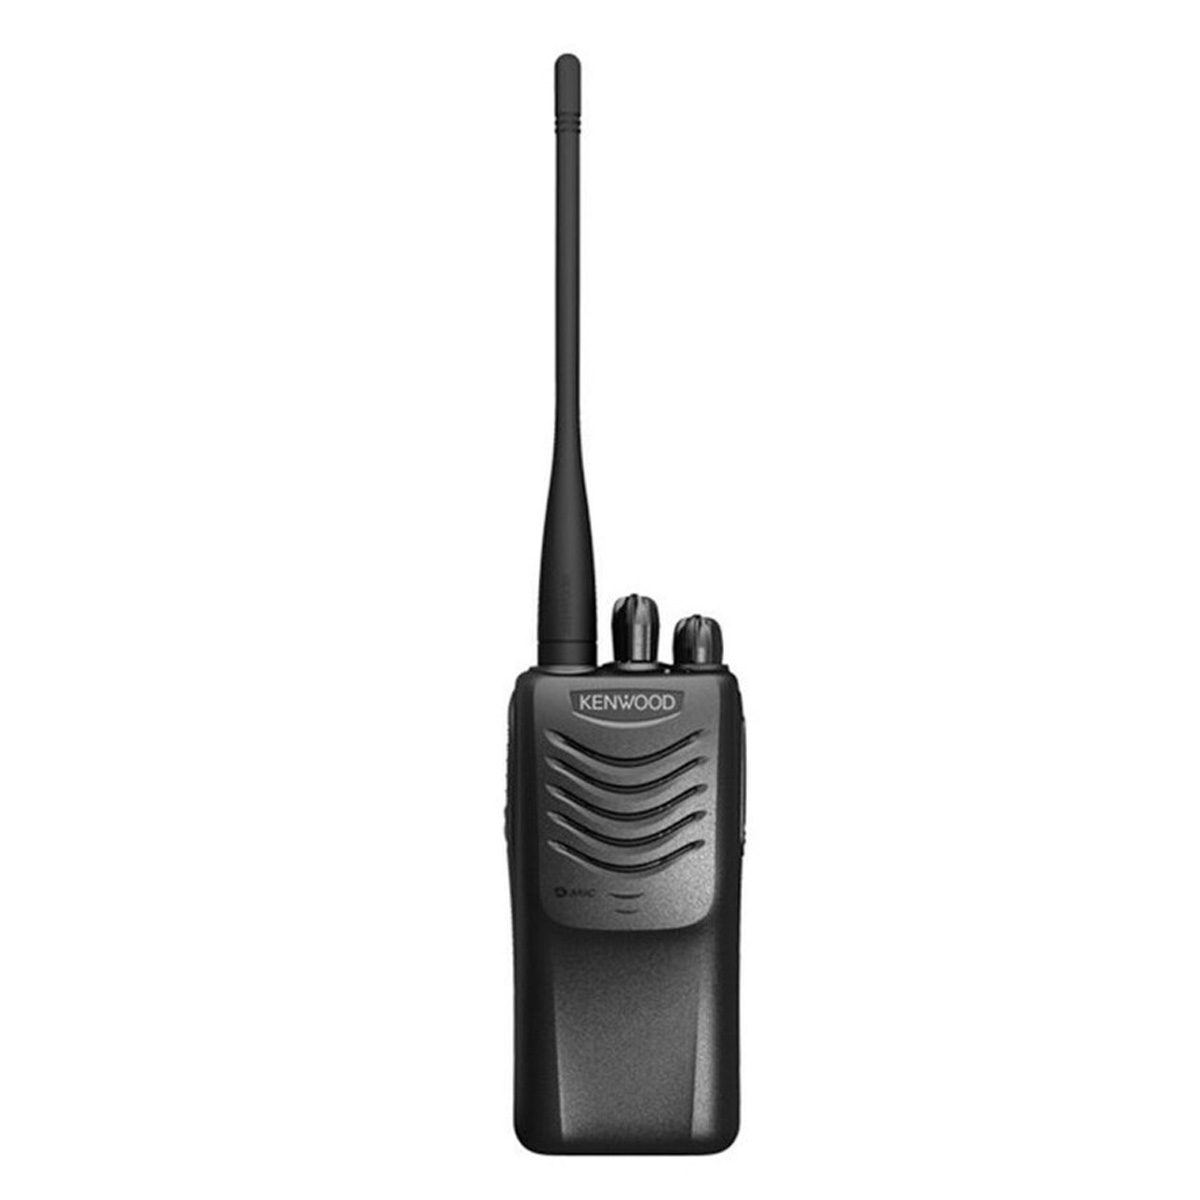 Radio KENWOOD TK-3000 Analógico UHF 400-430 MHZ